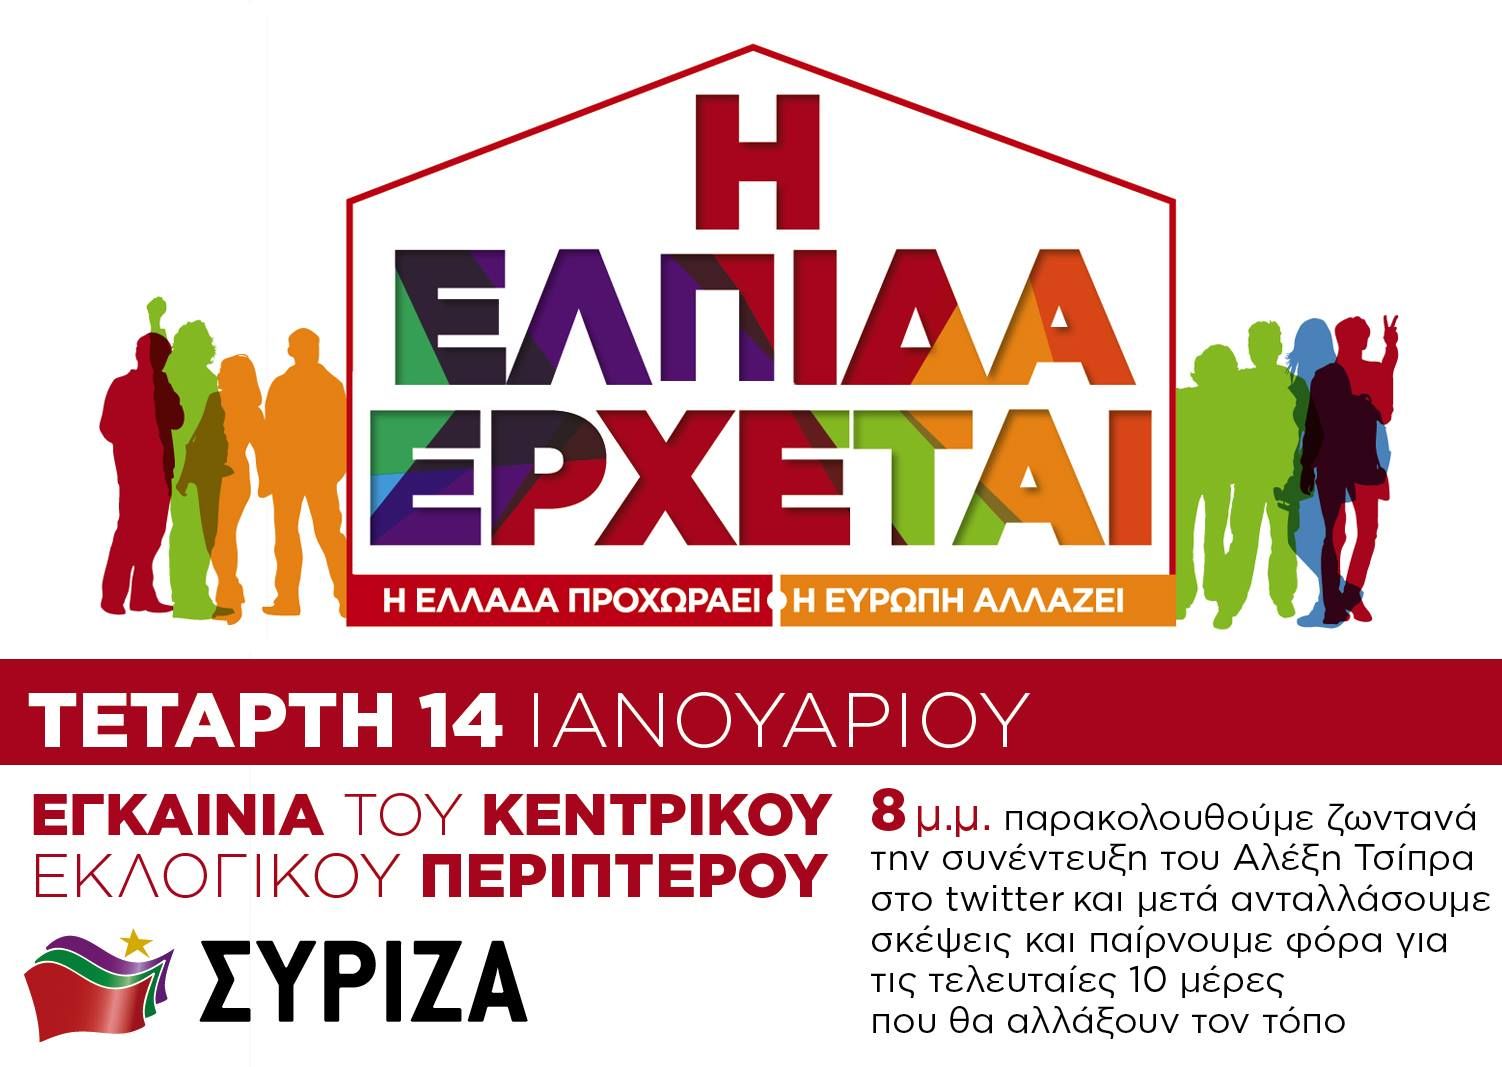 Την Τετάρτη 14/1/2015 εγκαινιάζουμε το κεντρικό εκλογικό περίπτερο του ΣΥΡΙΖΑ στην πλατεία Κλαυθμώνος!